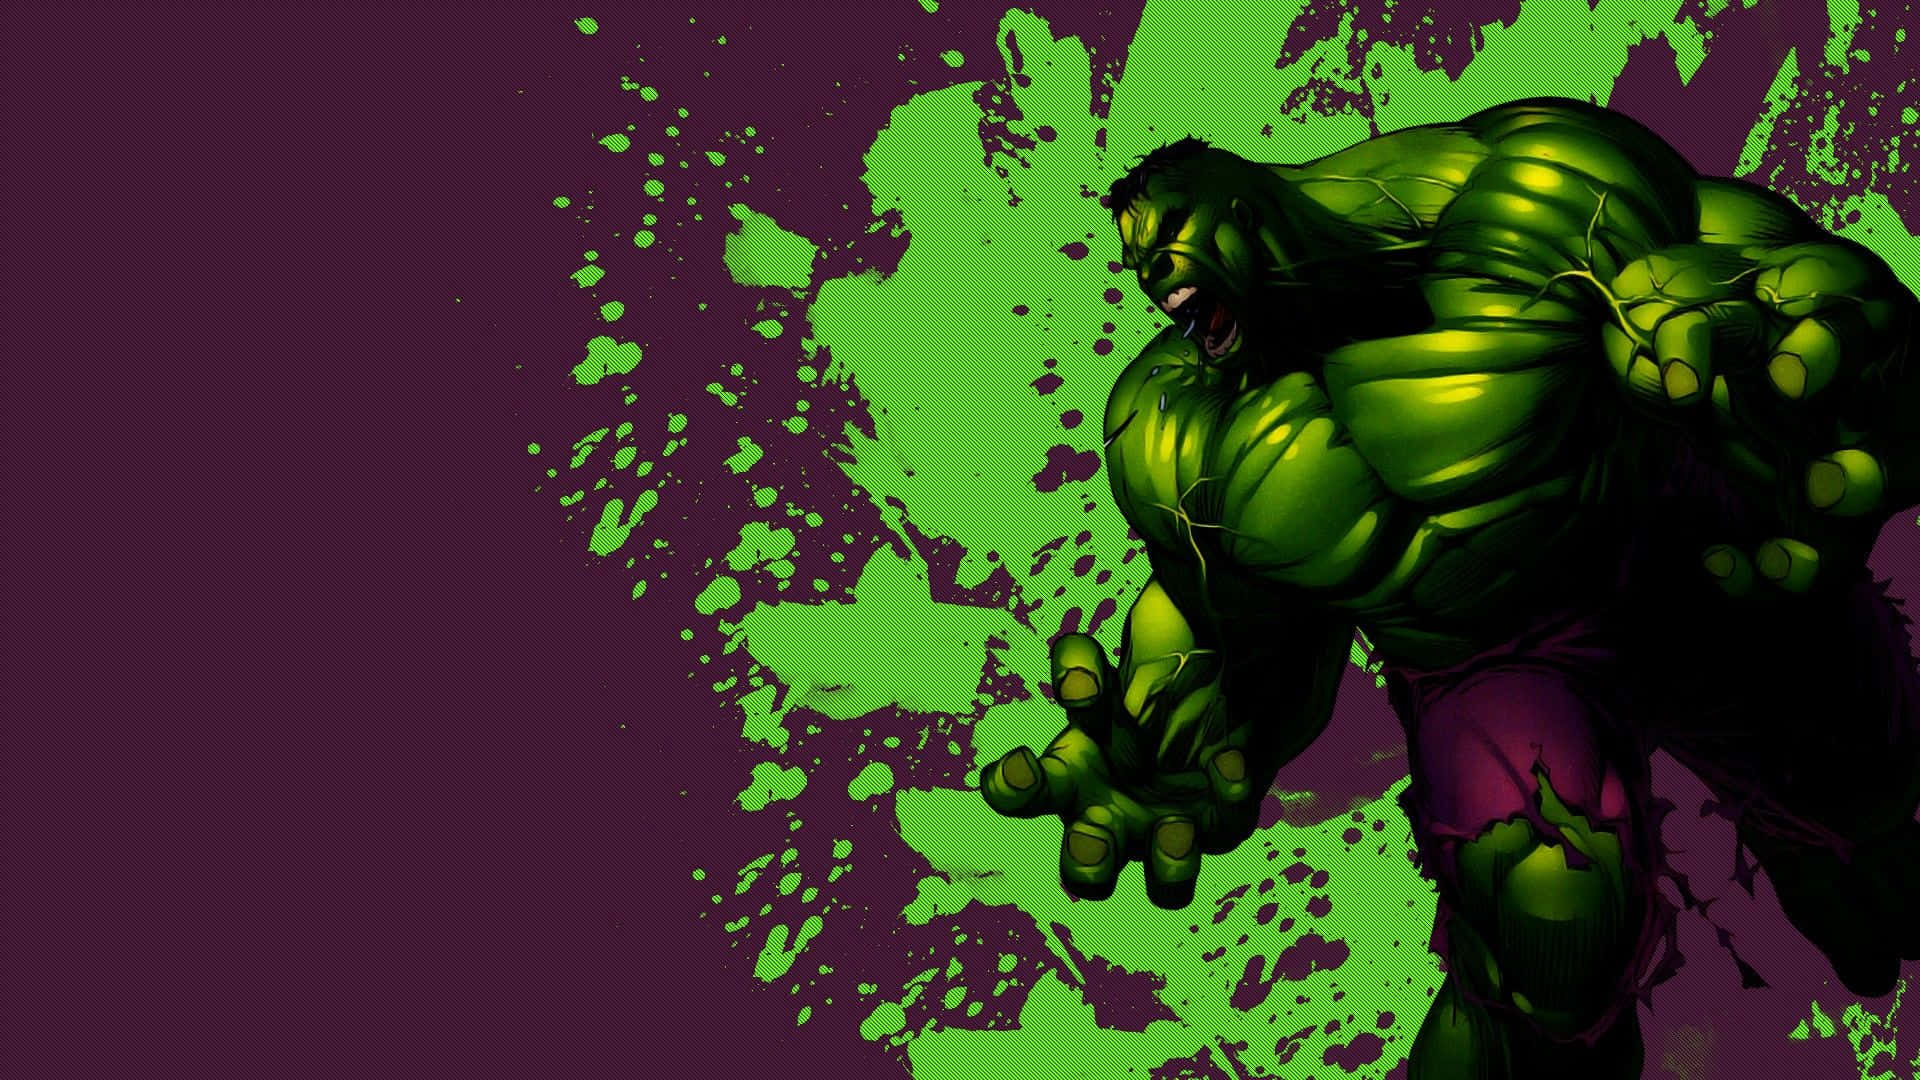 Jagär Den Fantastiska Hulken.